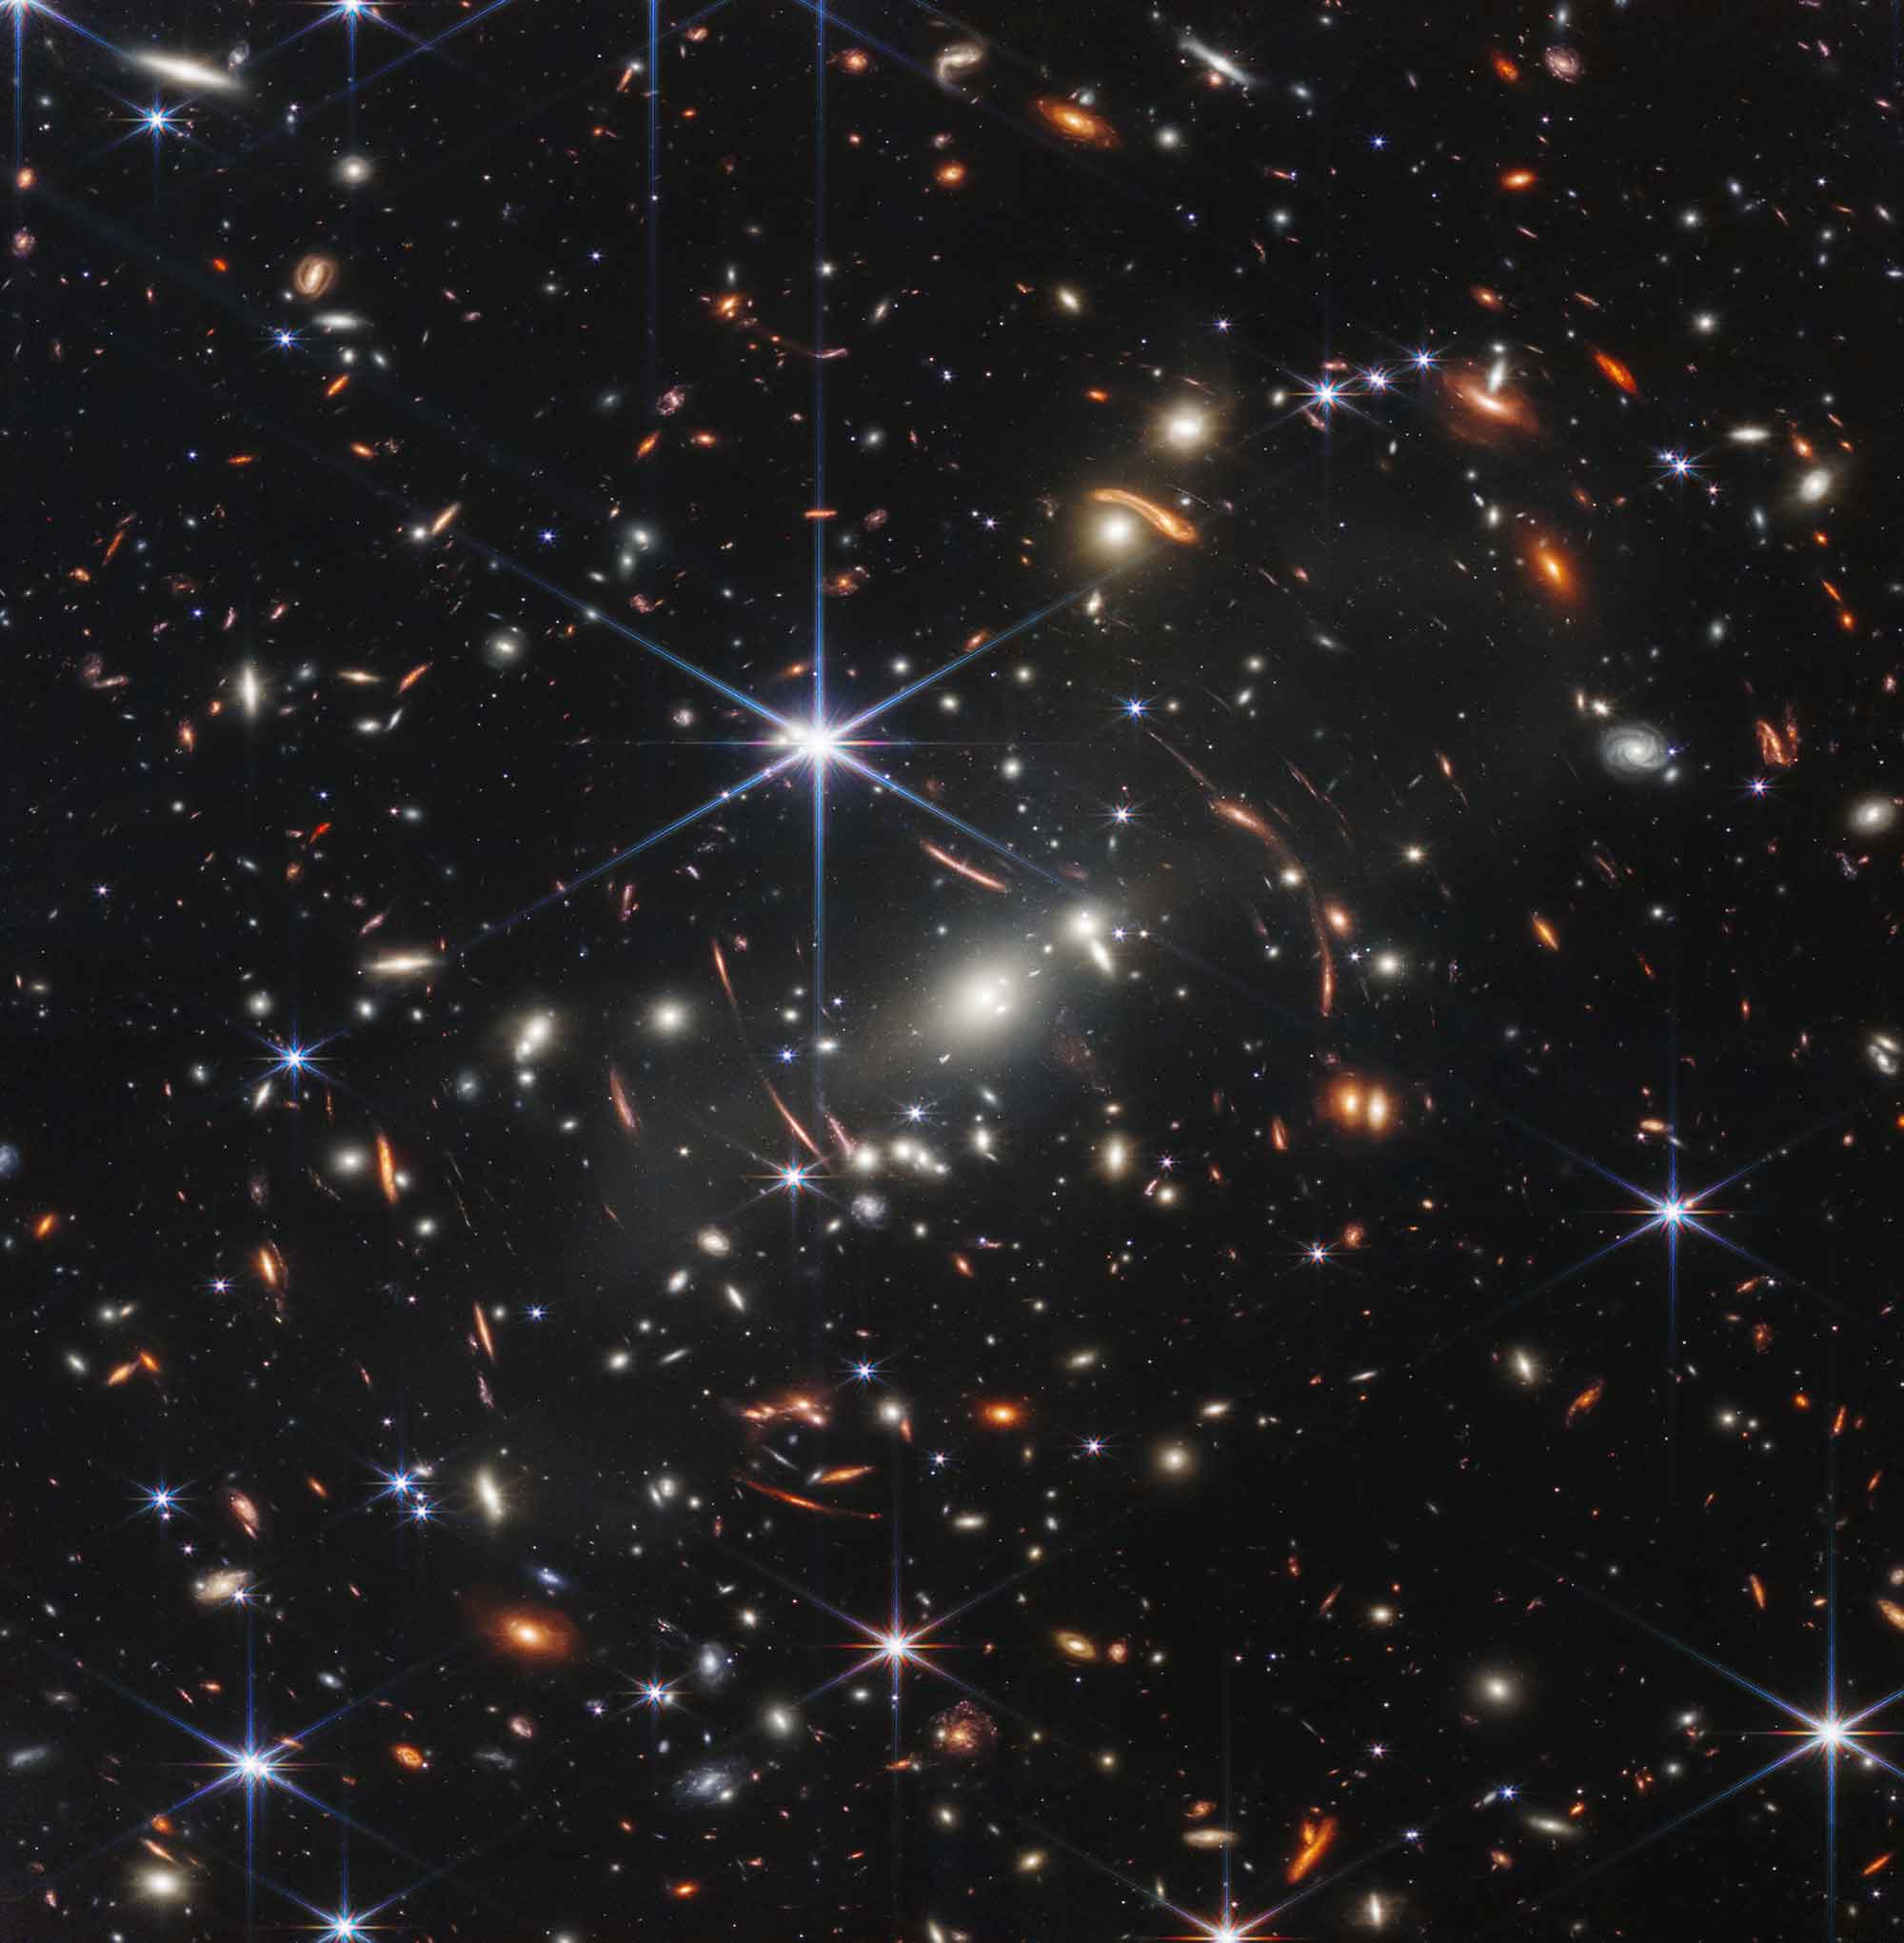 No, the James Webb has not disproved the Big Bang